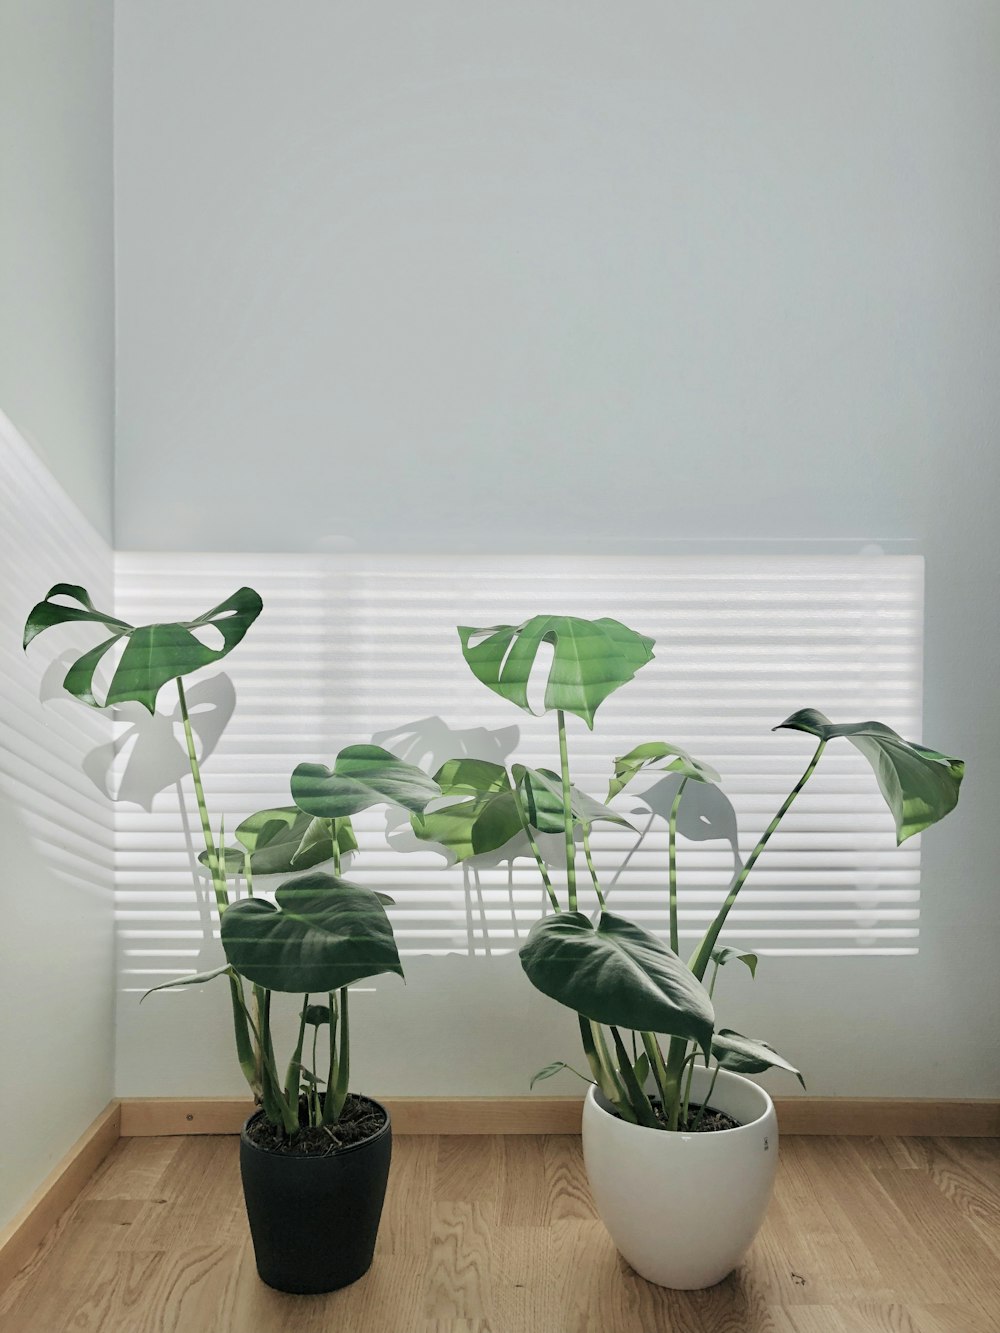 plantas frondosas verdes em vasos pretos e brancos